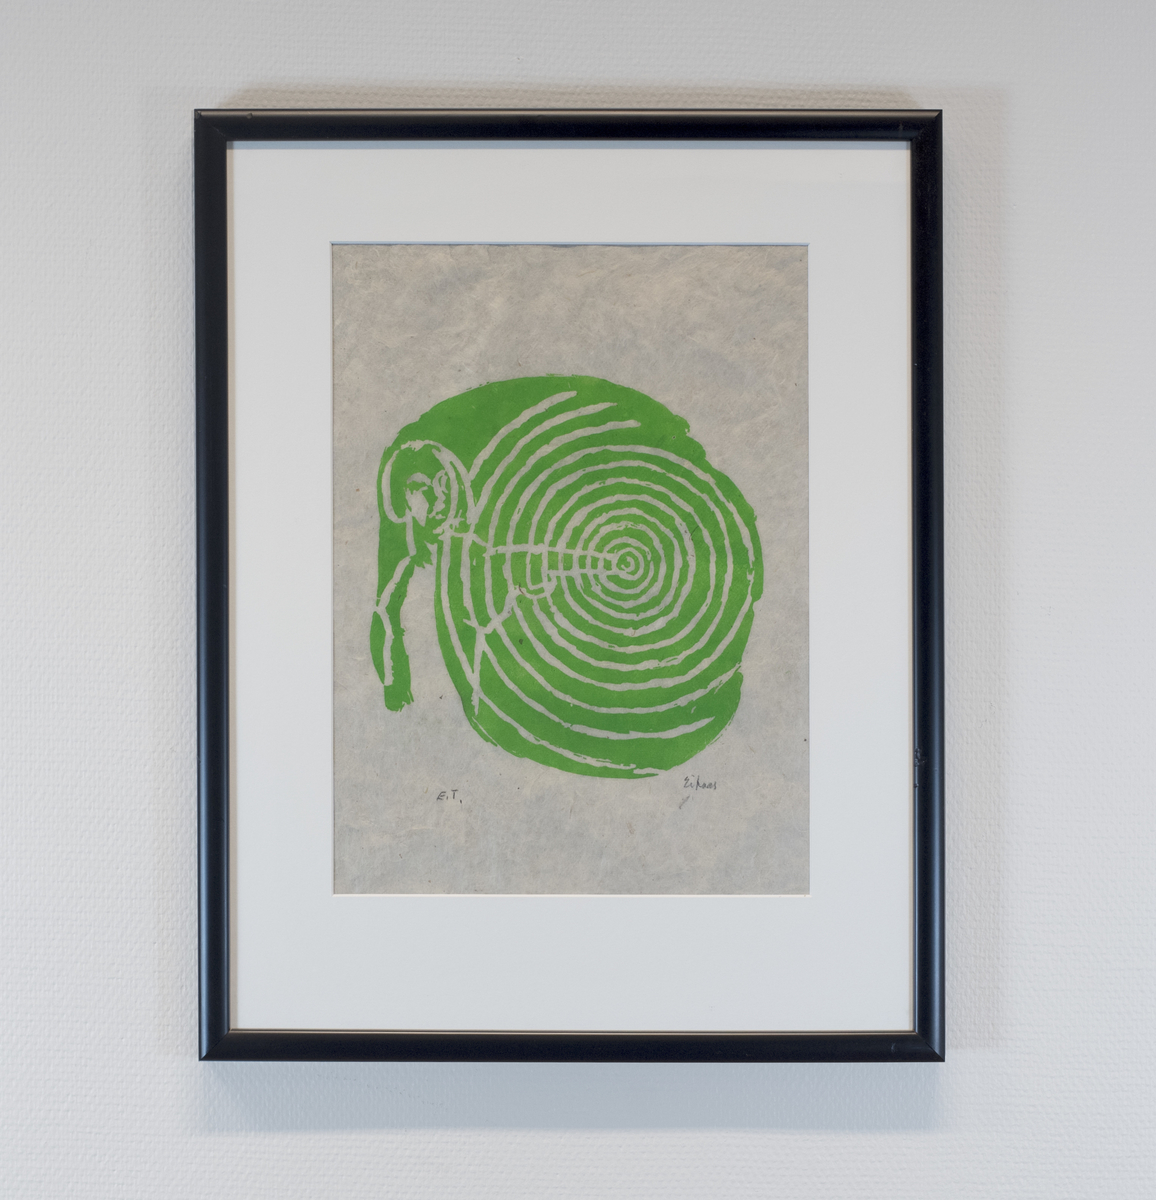 Menneskefigur med sirkler. Grønt trykk. Motivet er hentet fra Henrik Ibsens verk Hedda Gabler. 